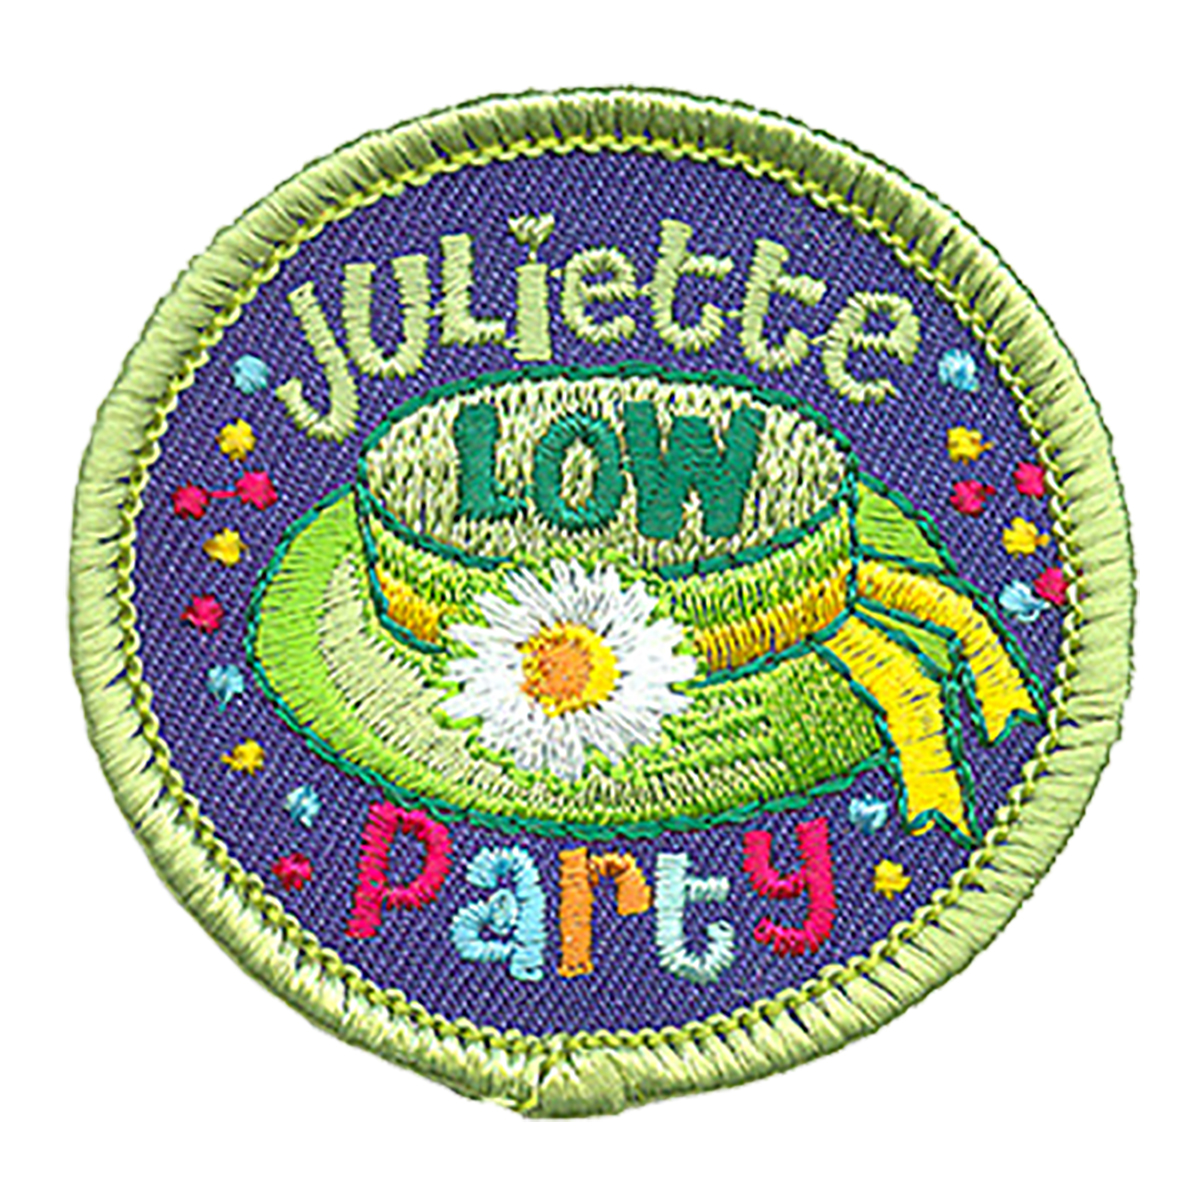 Juliette Low Party (Hat) - W